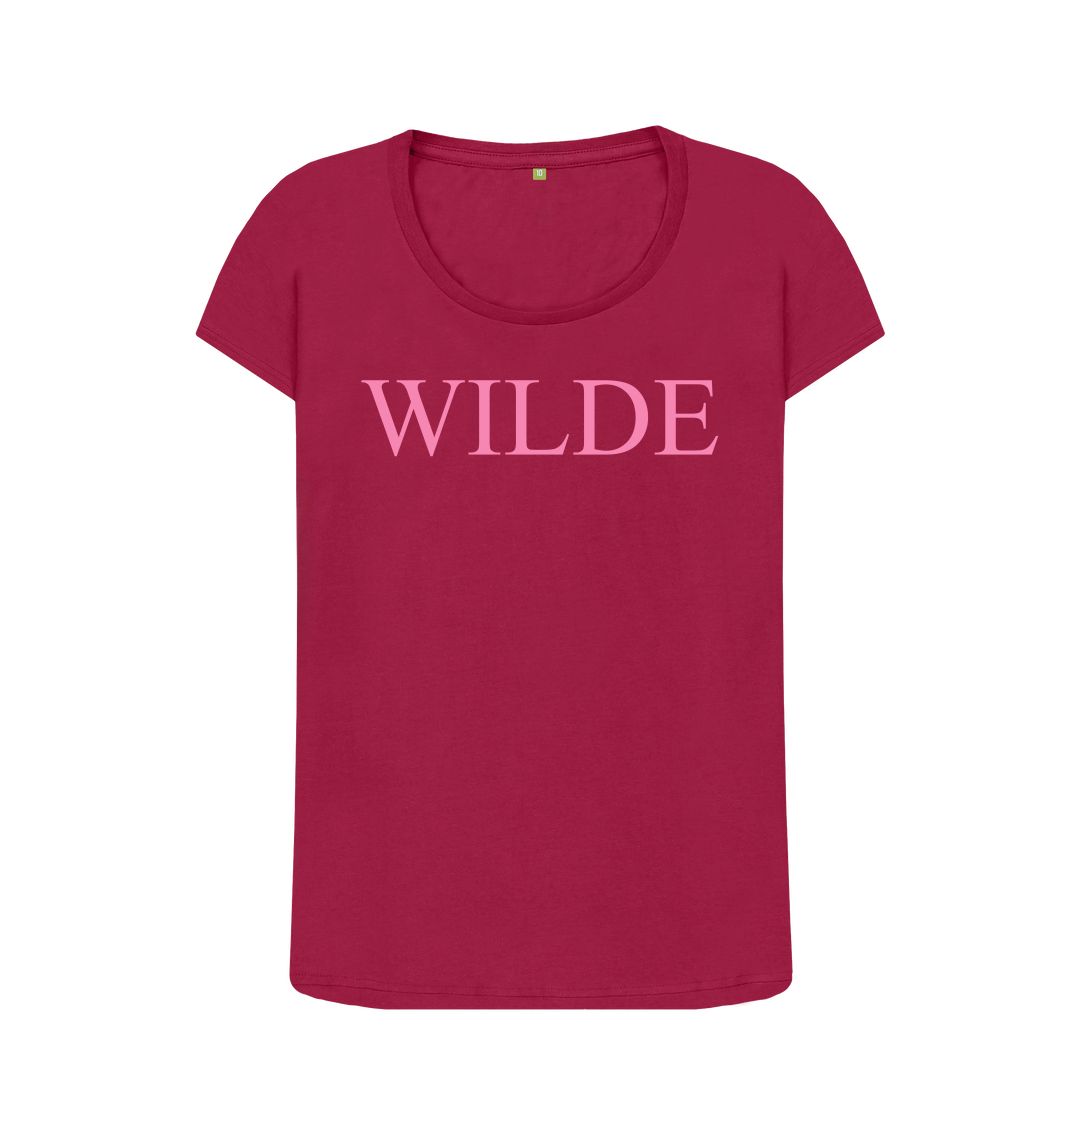 Cherry Wilde women's scoop neck t-shirt